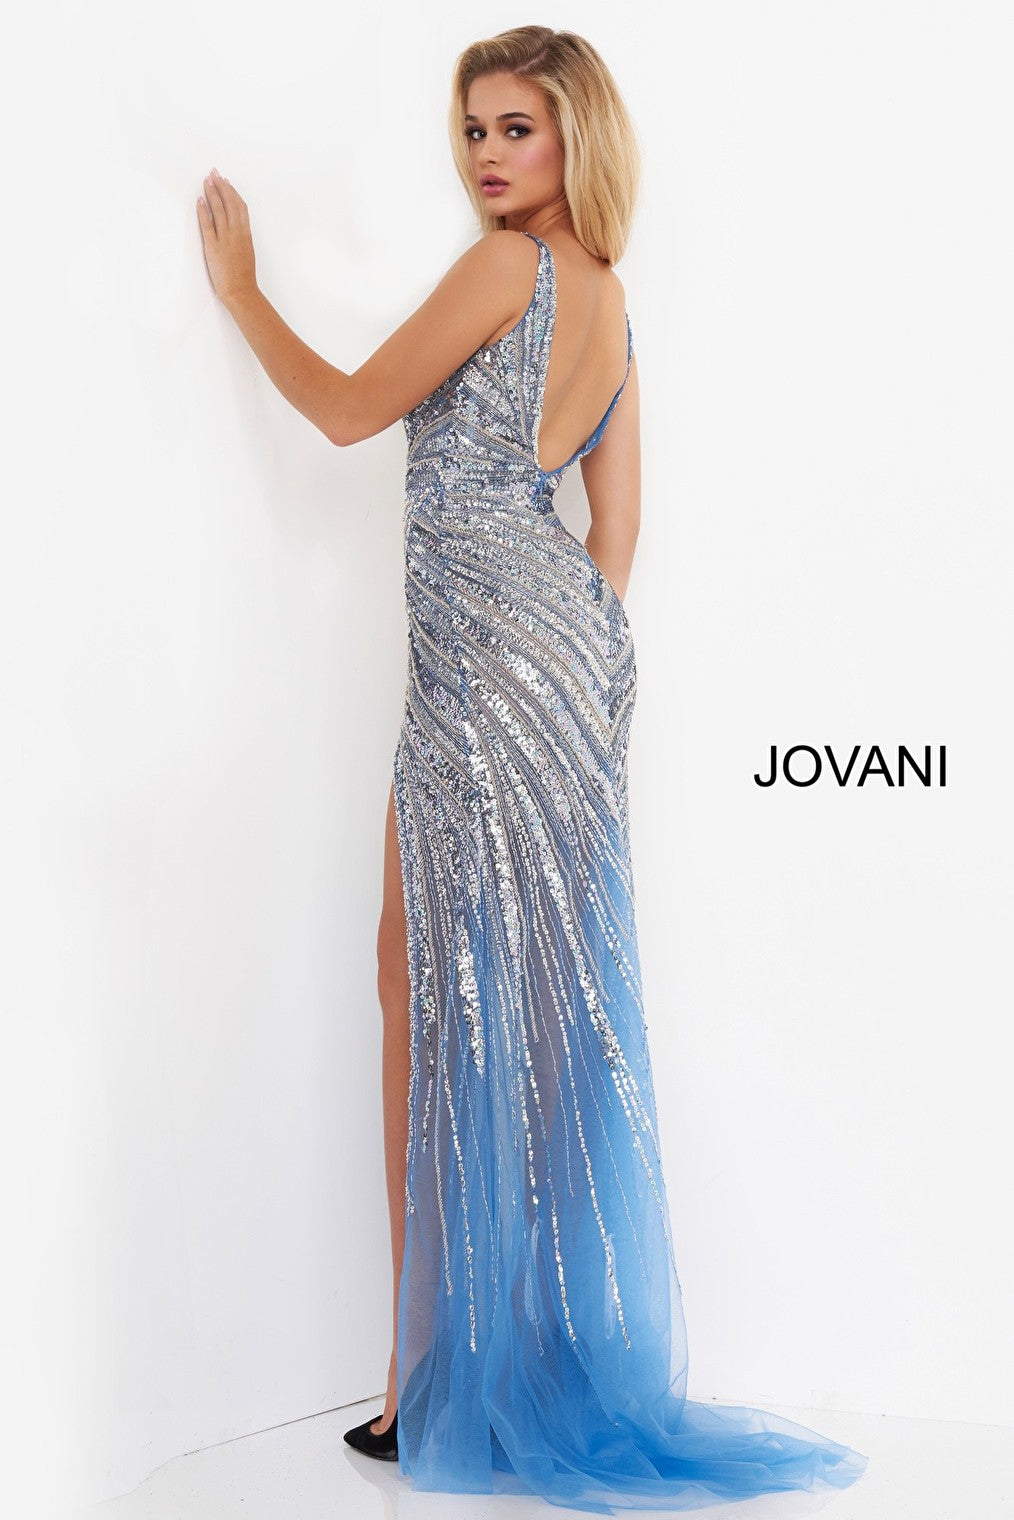 Jovani 3686 embellished dress